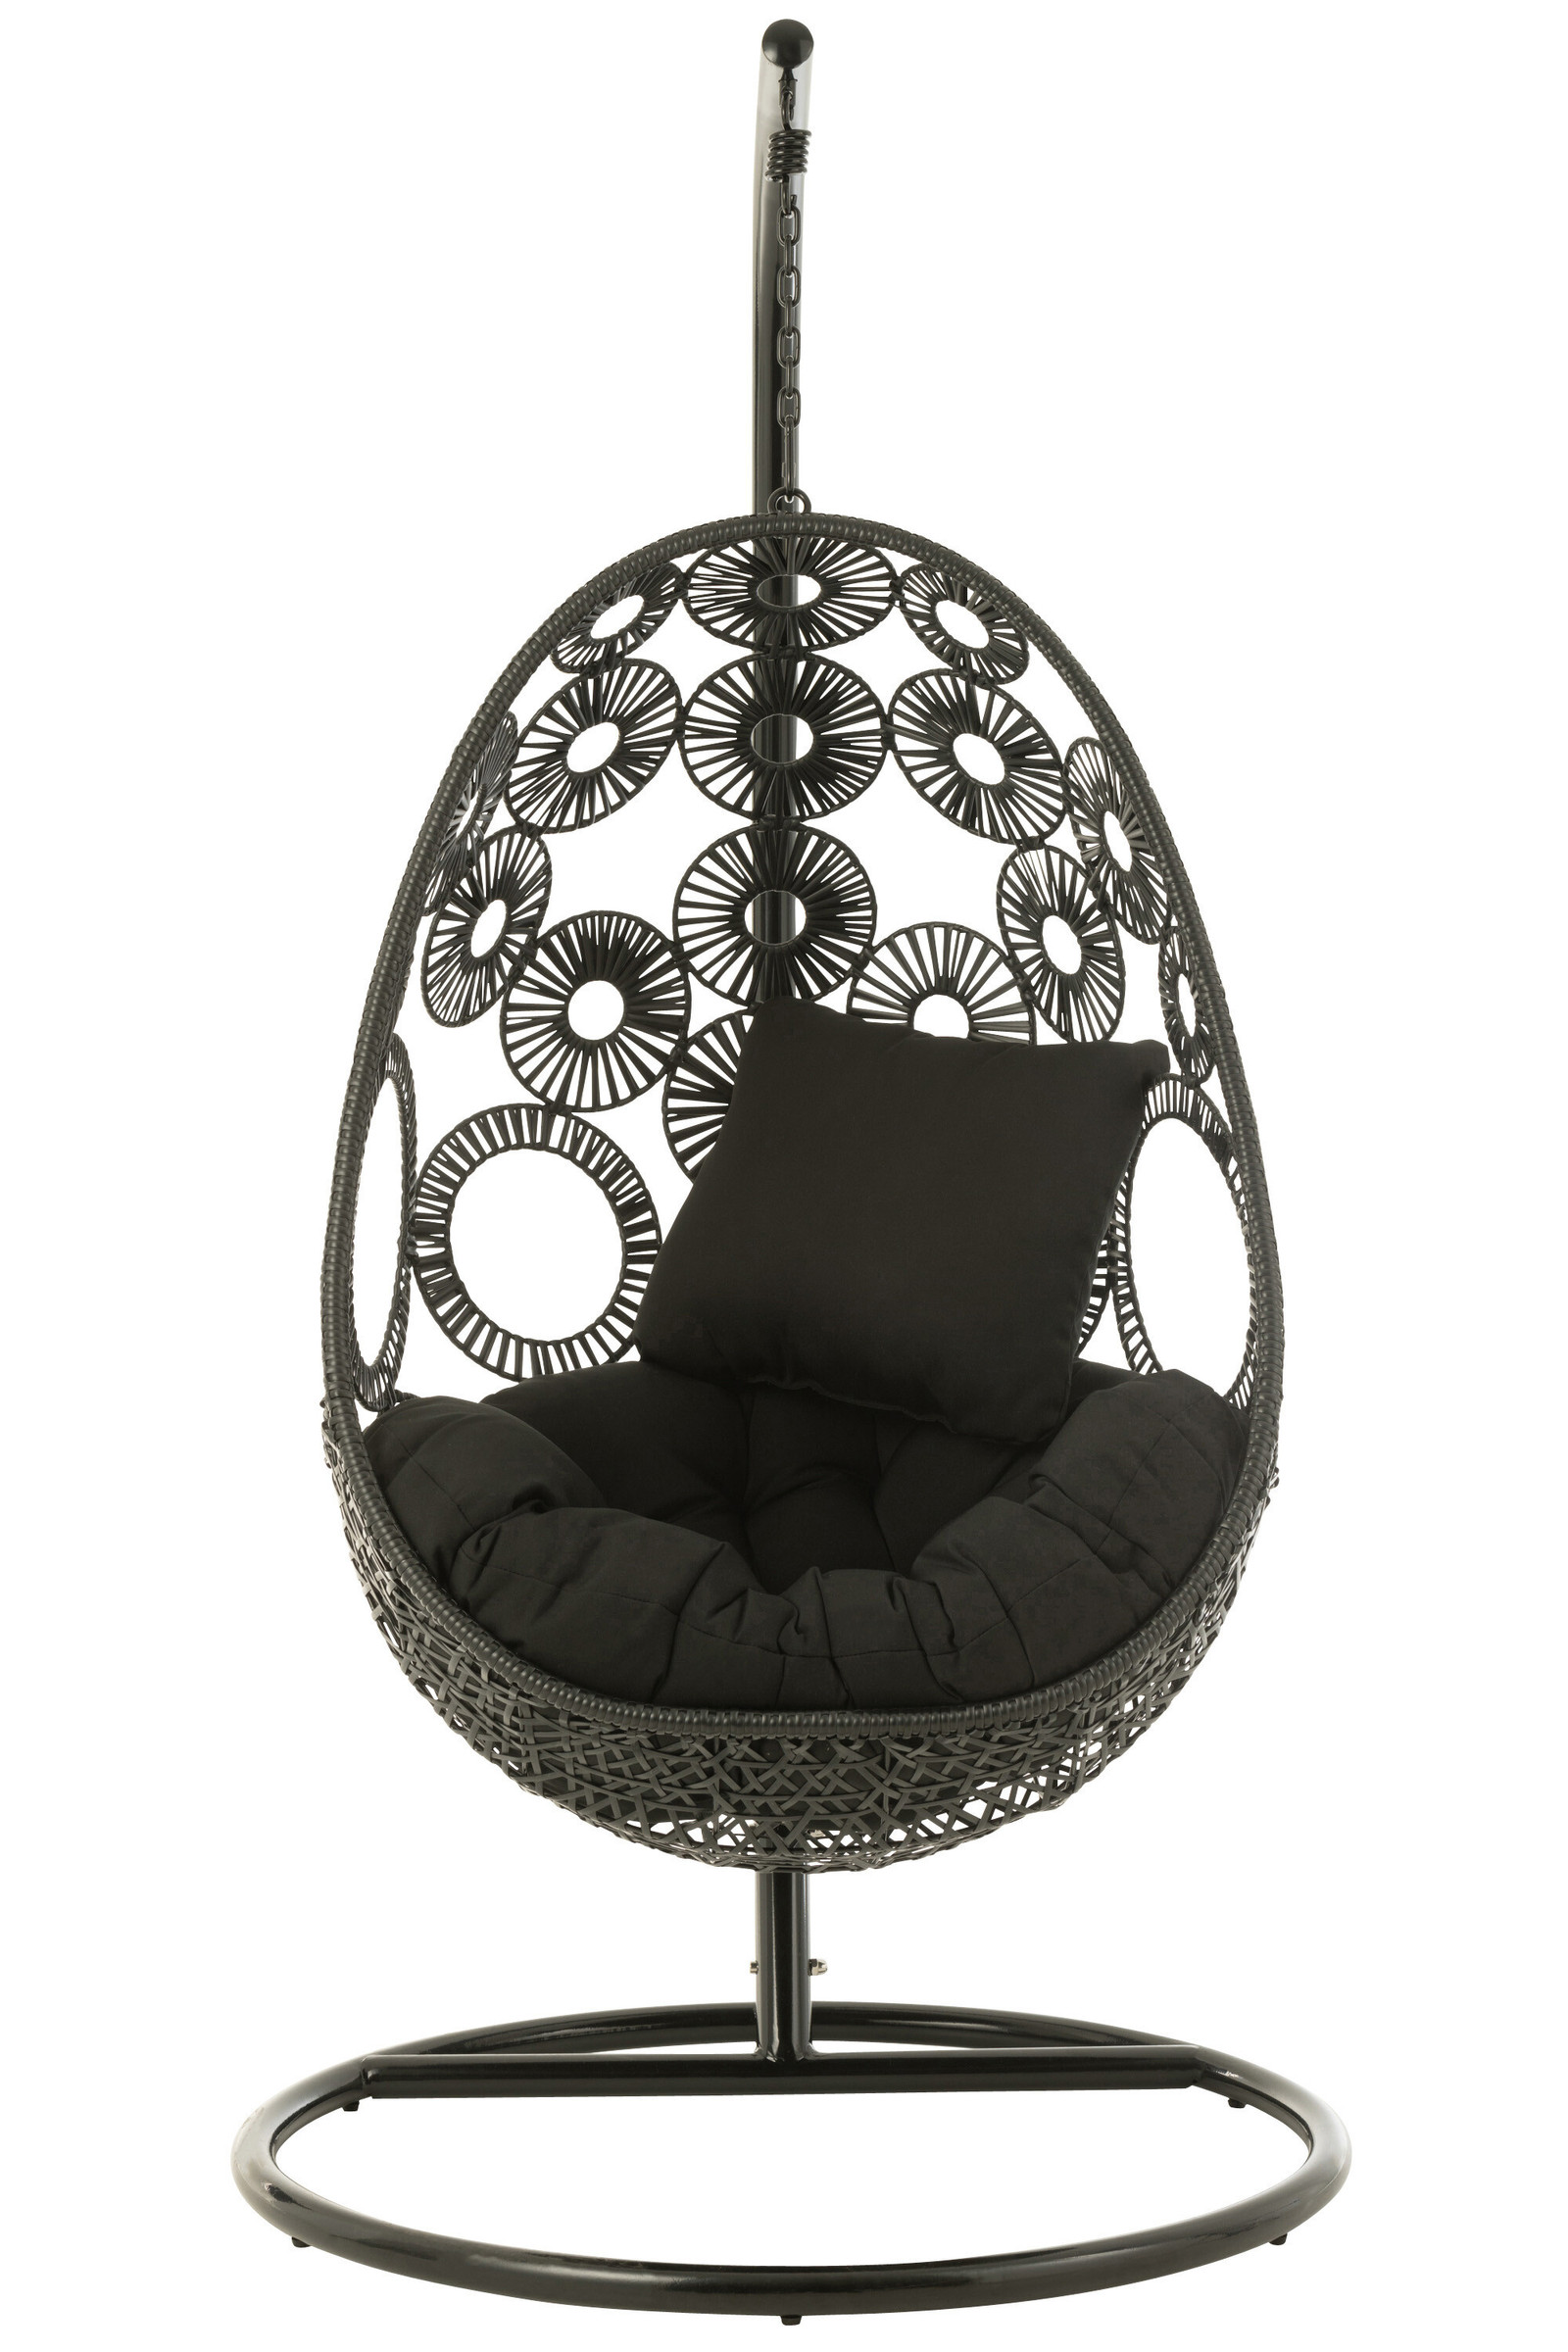 Ohuhu Chaise hamac avec matériel de fixation, chaise suspendue portable XL  avec coussins, kit d'installation amovible, barre de support en métal